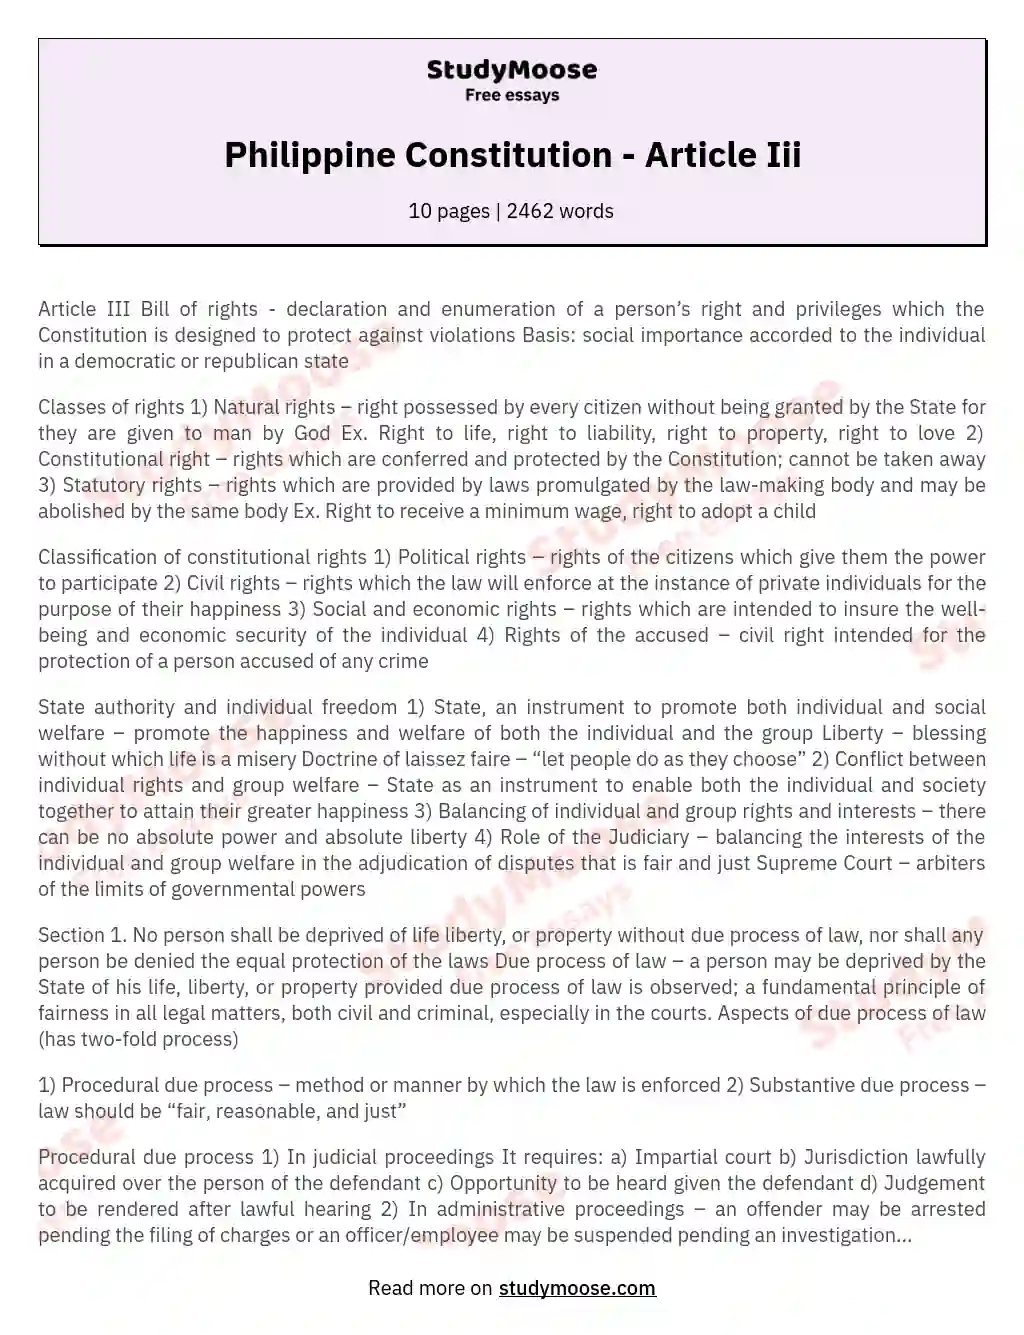 Philippine Constitution - Article Iii essay